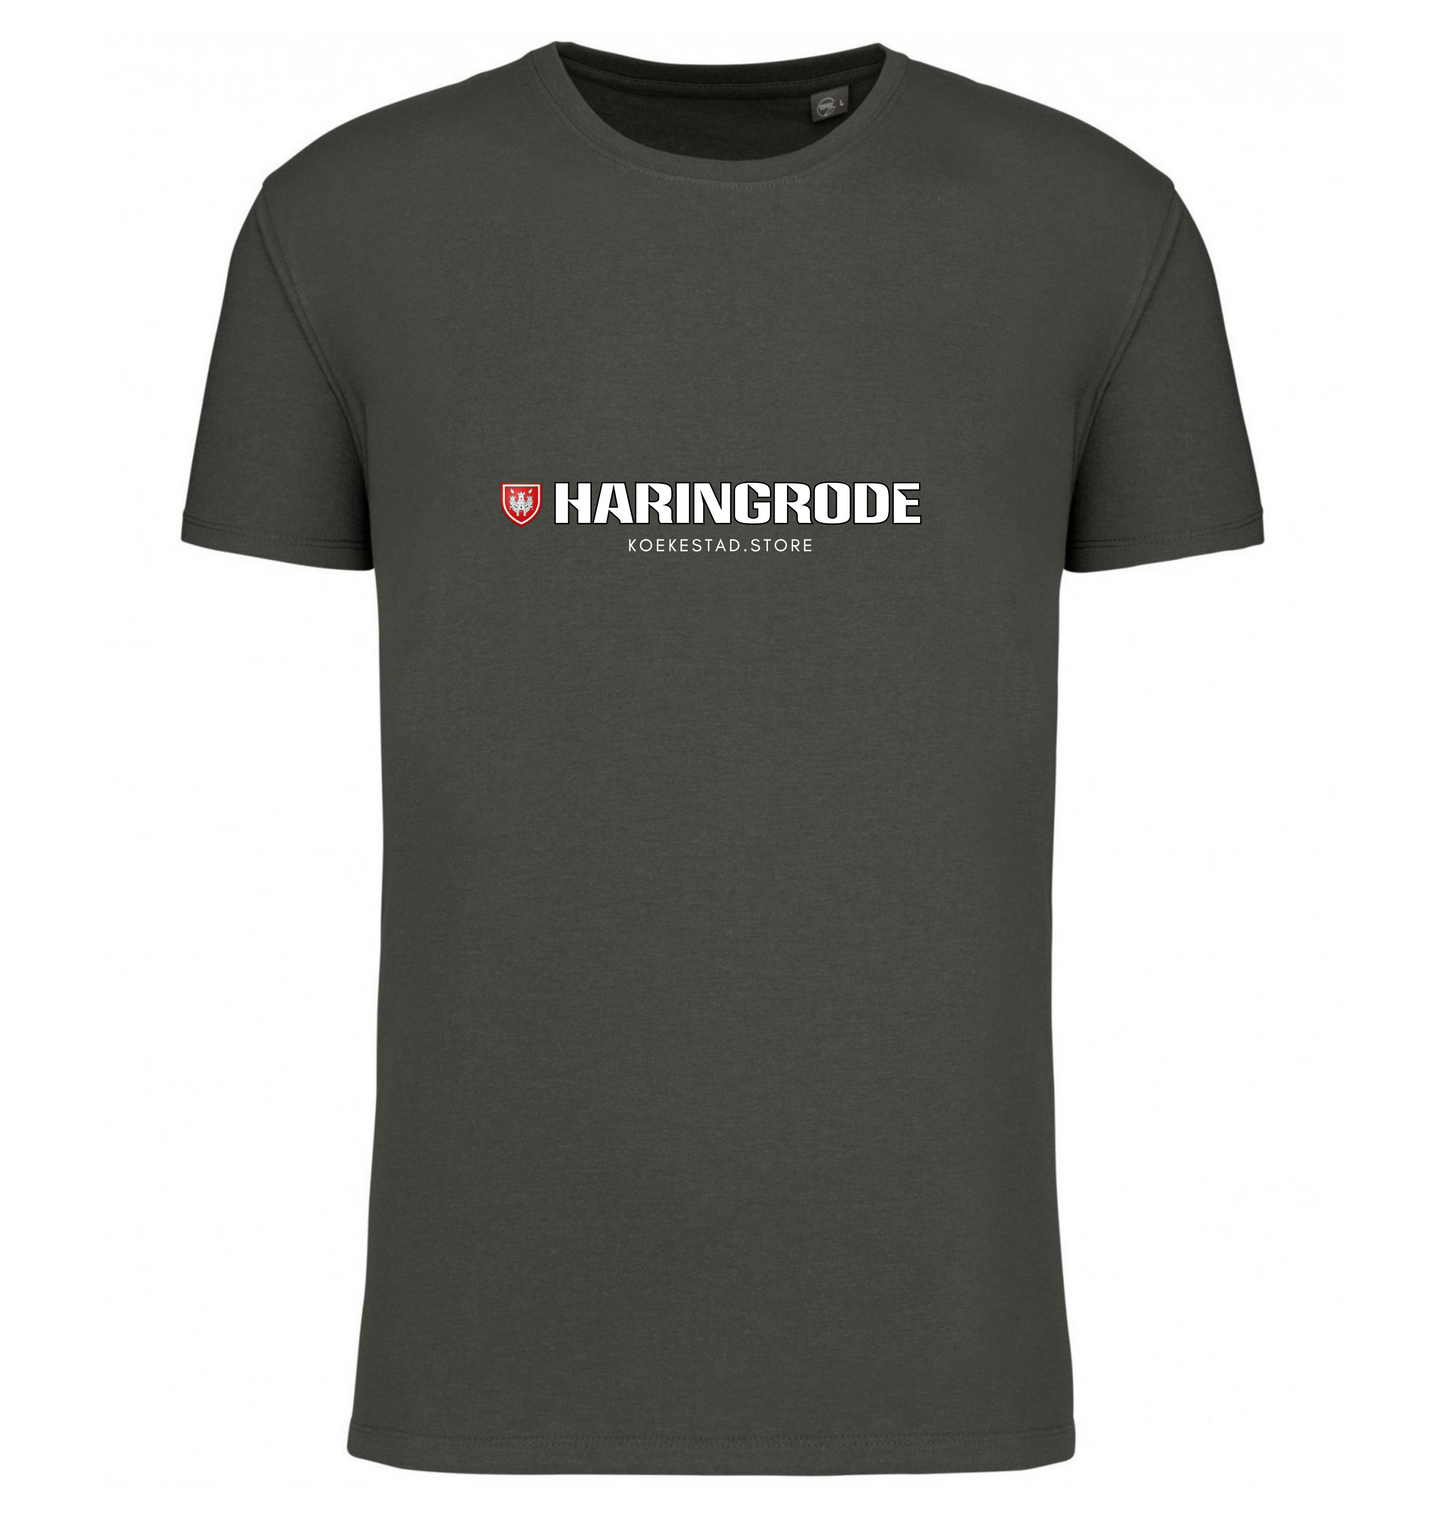 Premium T-Shirt - Haringrode  wijk - 100 % Biokatoen Unisex